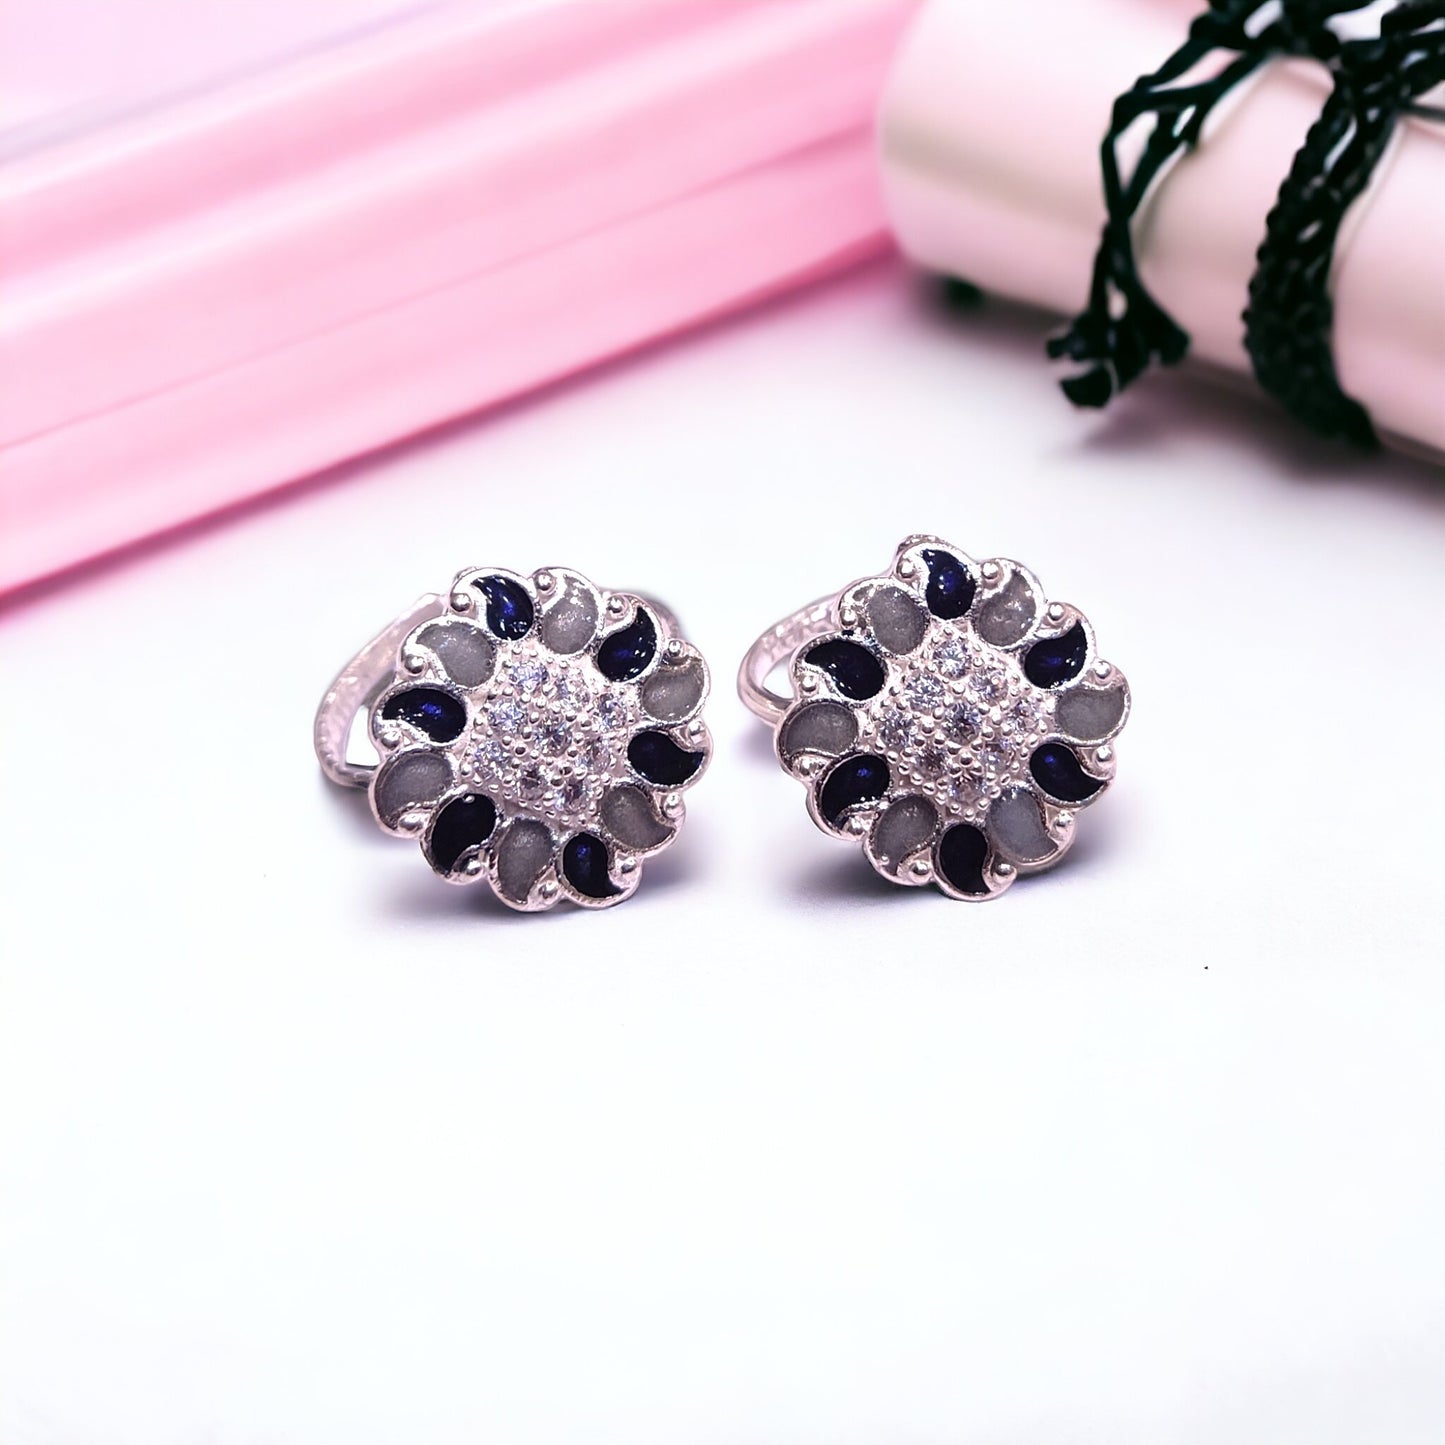 Silver Toe rings for women - jauhari jewellers